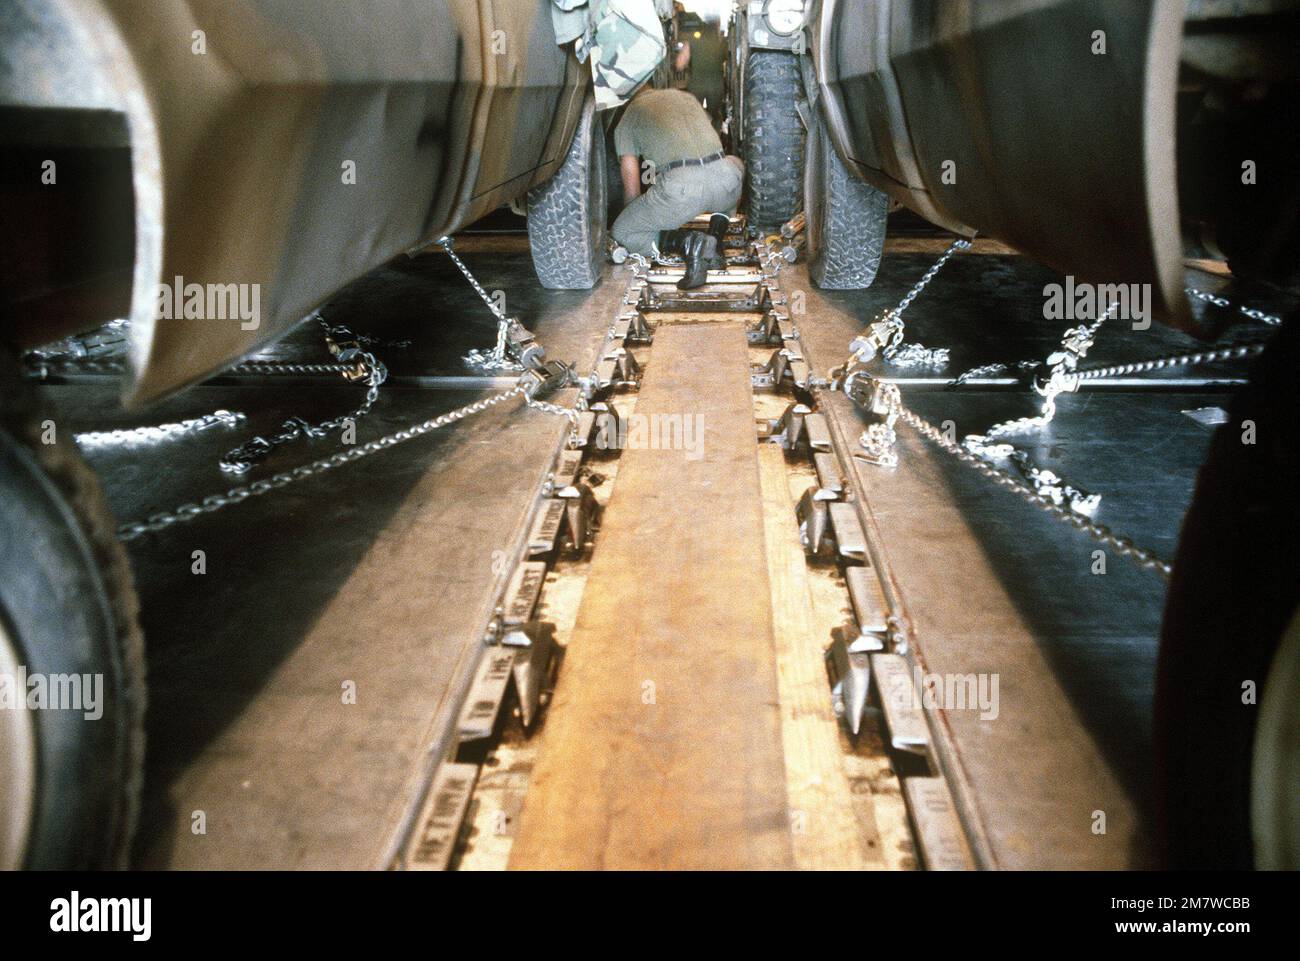 Les véhicules sont fixés par des chaînes au plancher d'un avion cargo 747 pendant l'opération Ocean Venture '82. Objet opération/série : OCEAN VENTURE '82 base : fort Campbell État : Kentucky (KY) pays : États-Unis d'Amérique (USA) Banque D'Images